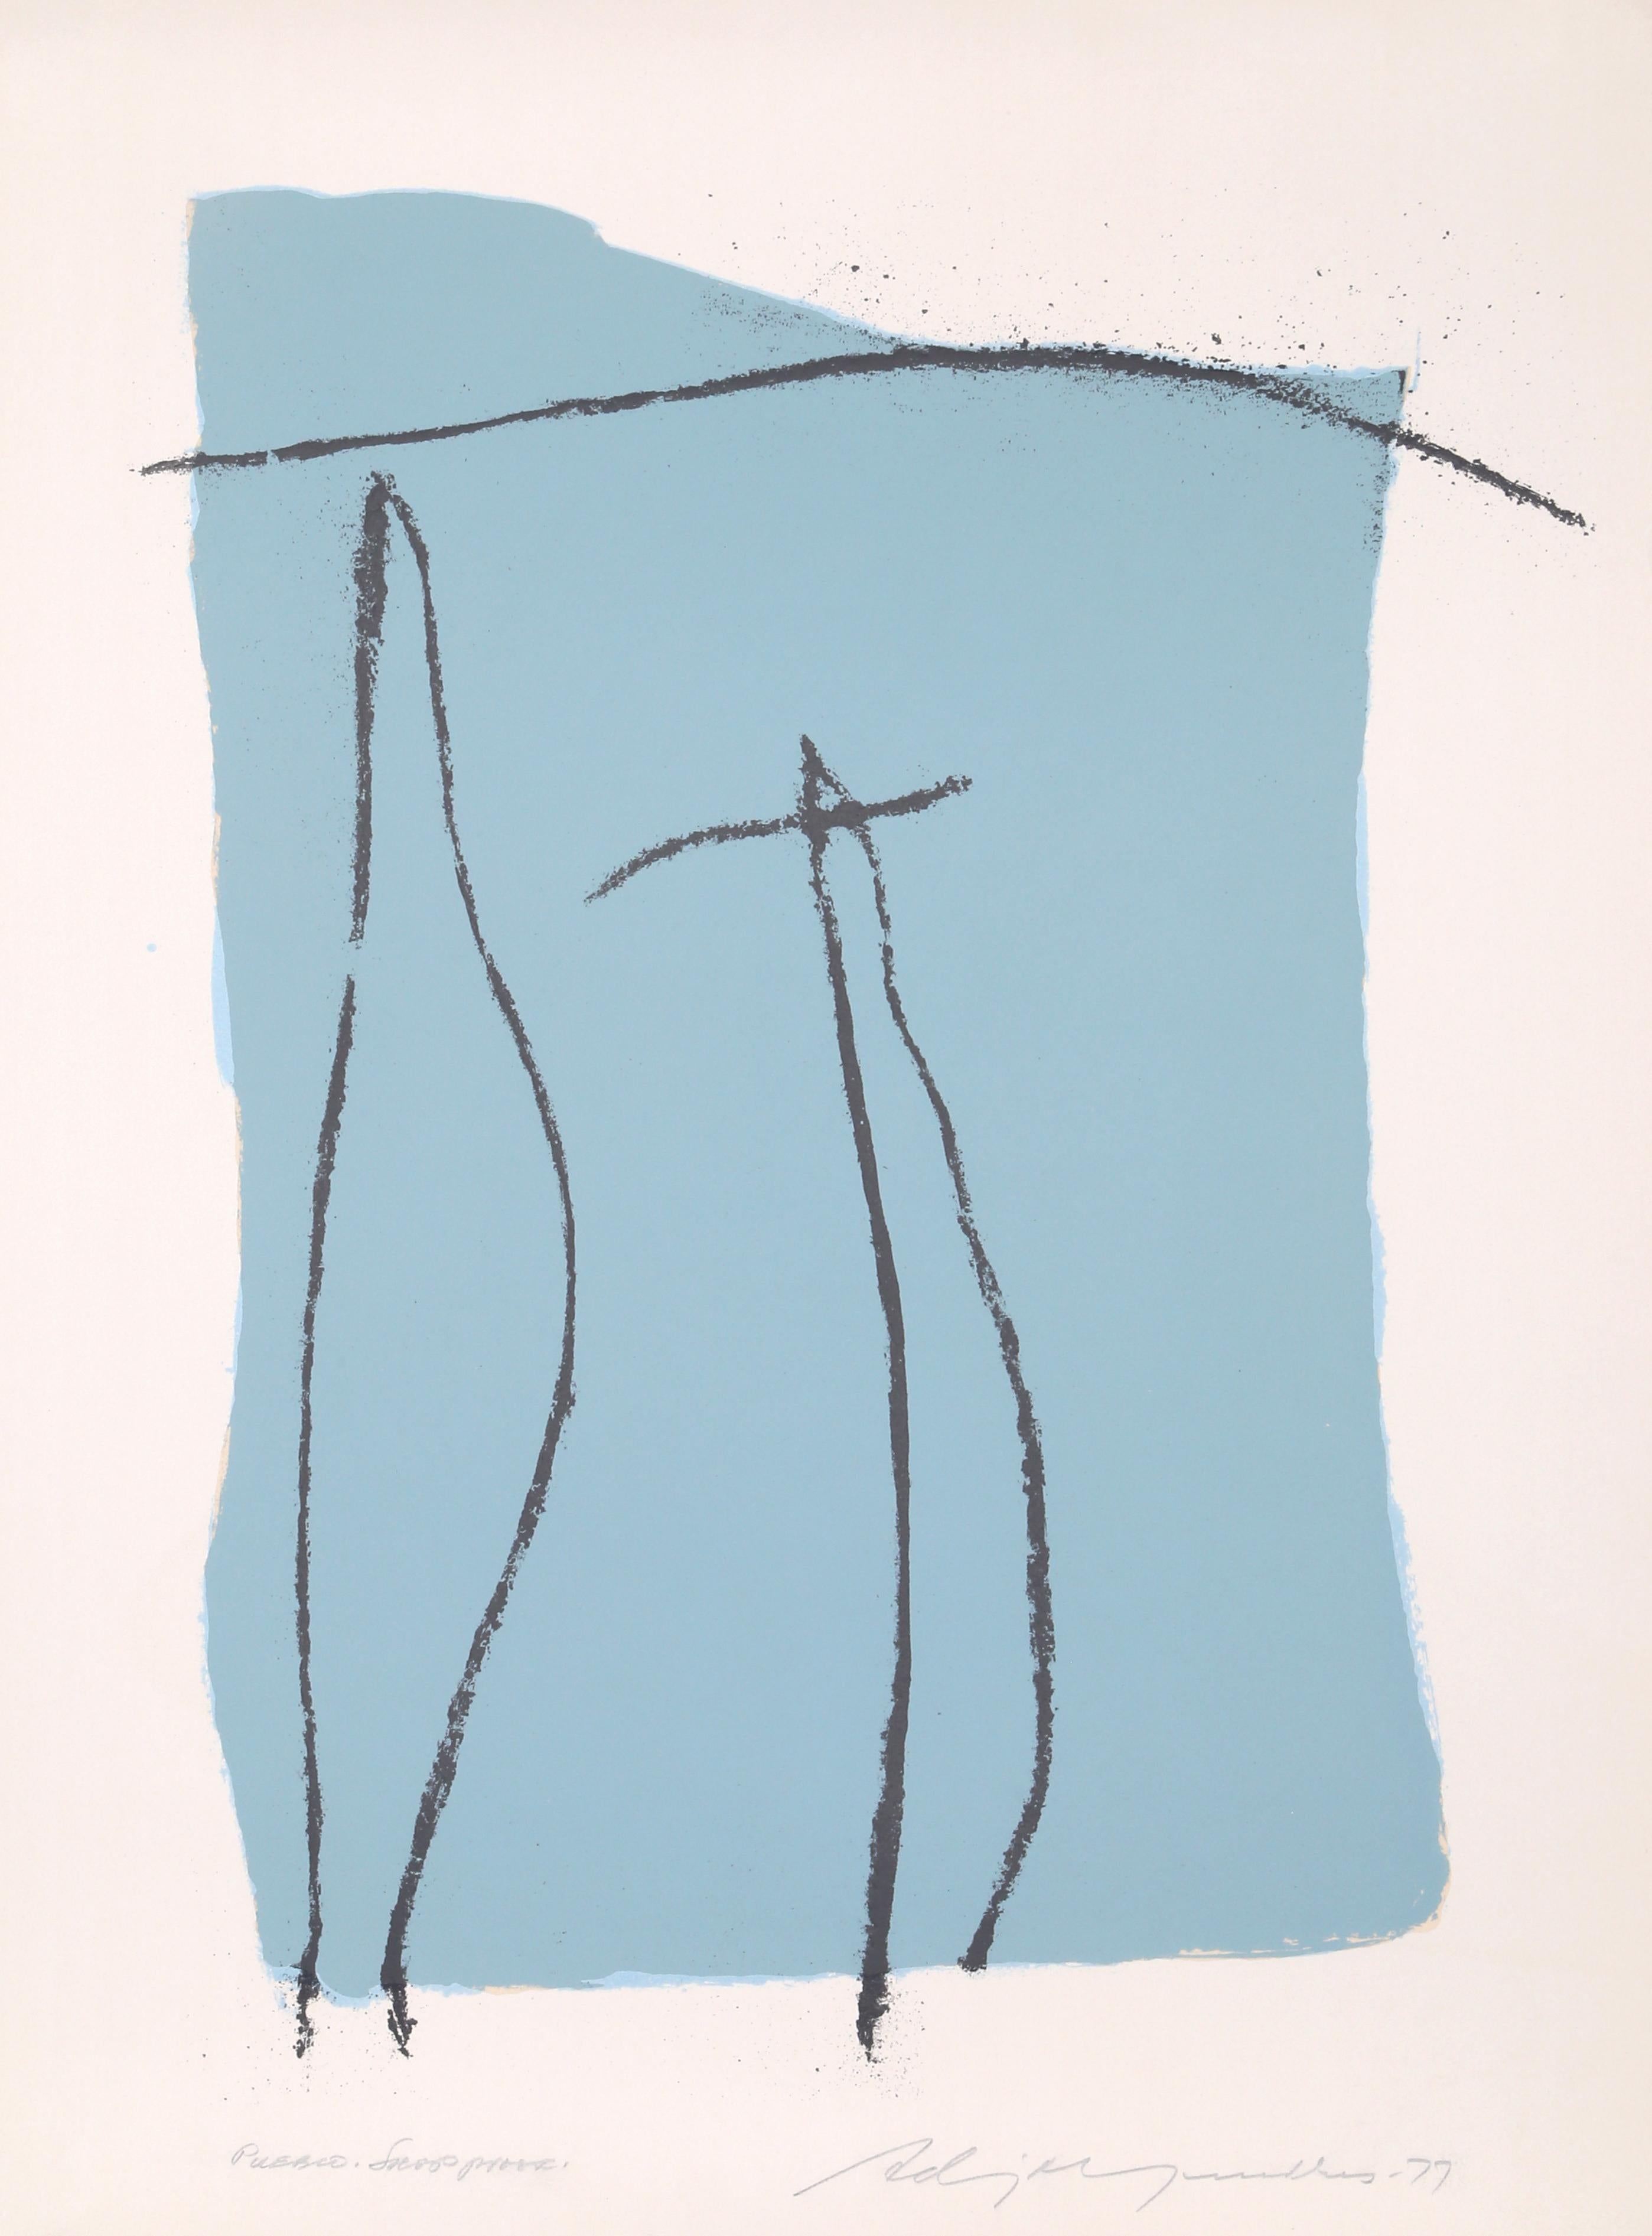 Künstlerin: Adja Yunkers, Lettin/Amerikanerin (1900 - 1983)
Titel: Pueblo
Jahr: 1977
Medium: Lithographie, signiert, datiert und betitelt mit Bleistift
Auflage: 70, Shop Proof
Größe: 33,5 x 25 Zoll (85,09 x 63,5 cm)